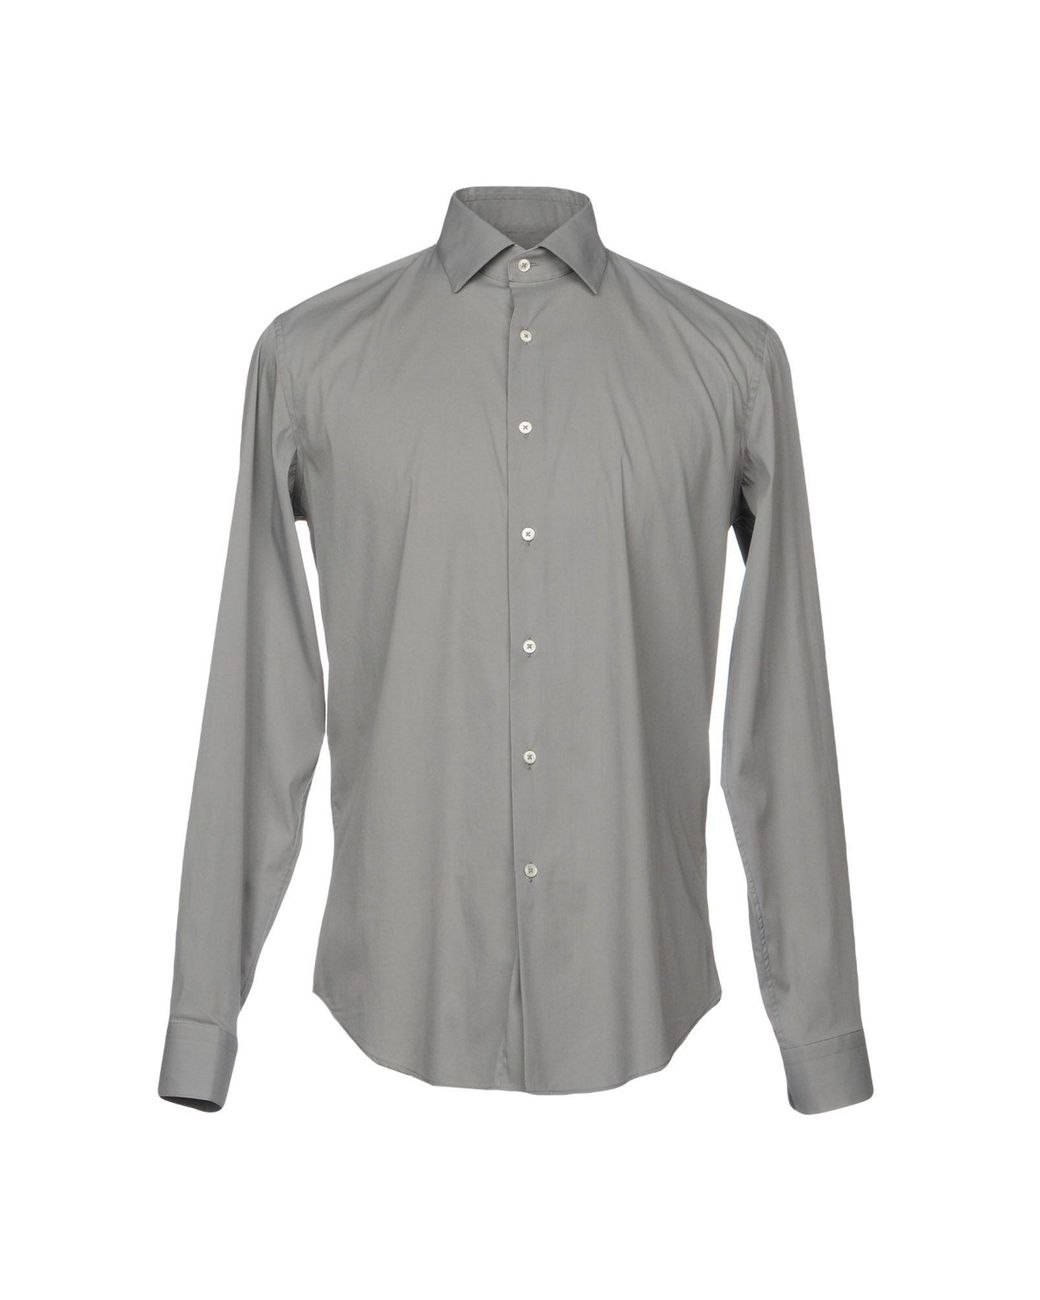 Robert Friedman Cotton Shirt in Grey (Gray) for Men - Lyst